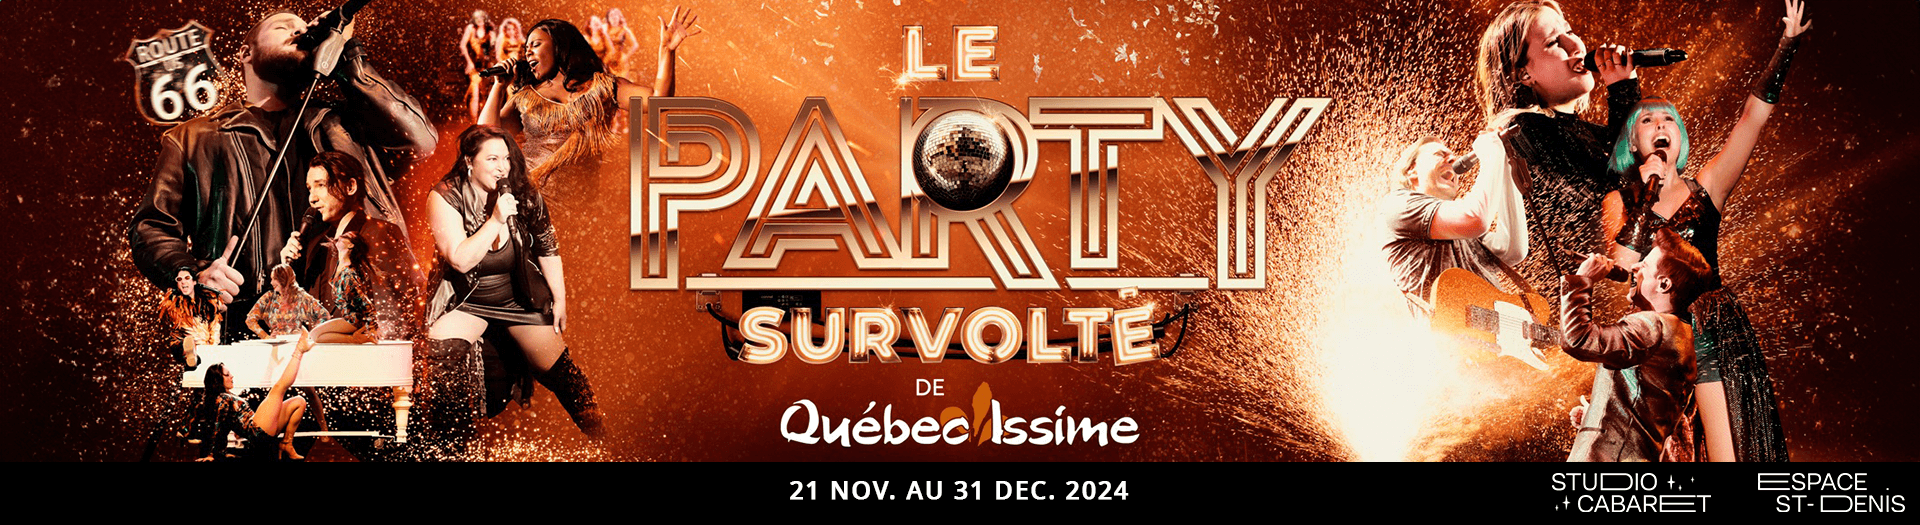 Party - Survolté, Studio-Cabaret - Espace St-Denis, Montréal